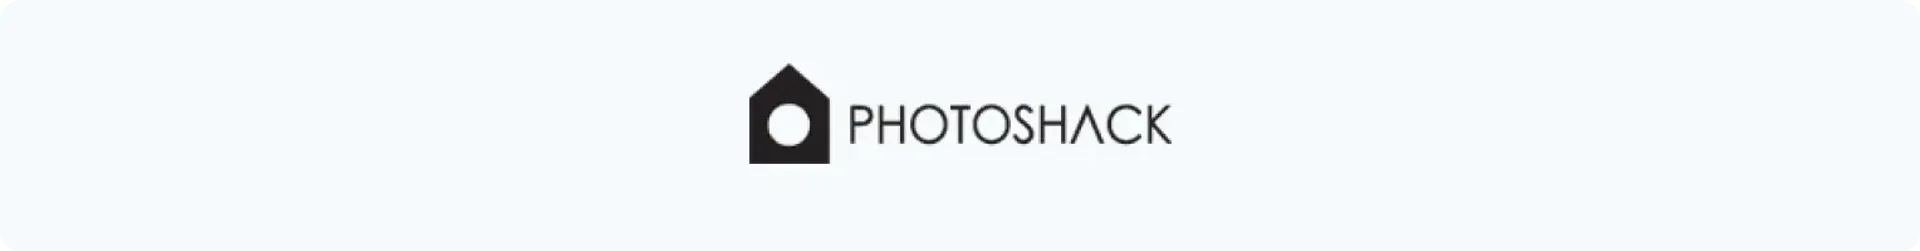 PhotoShack